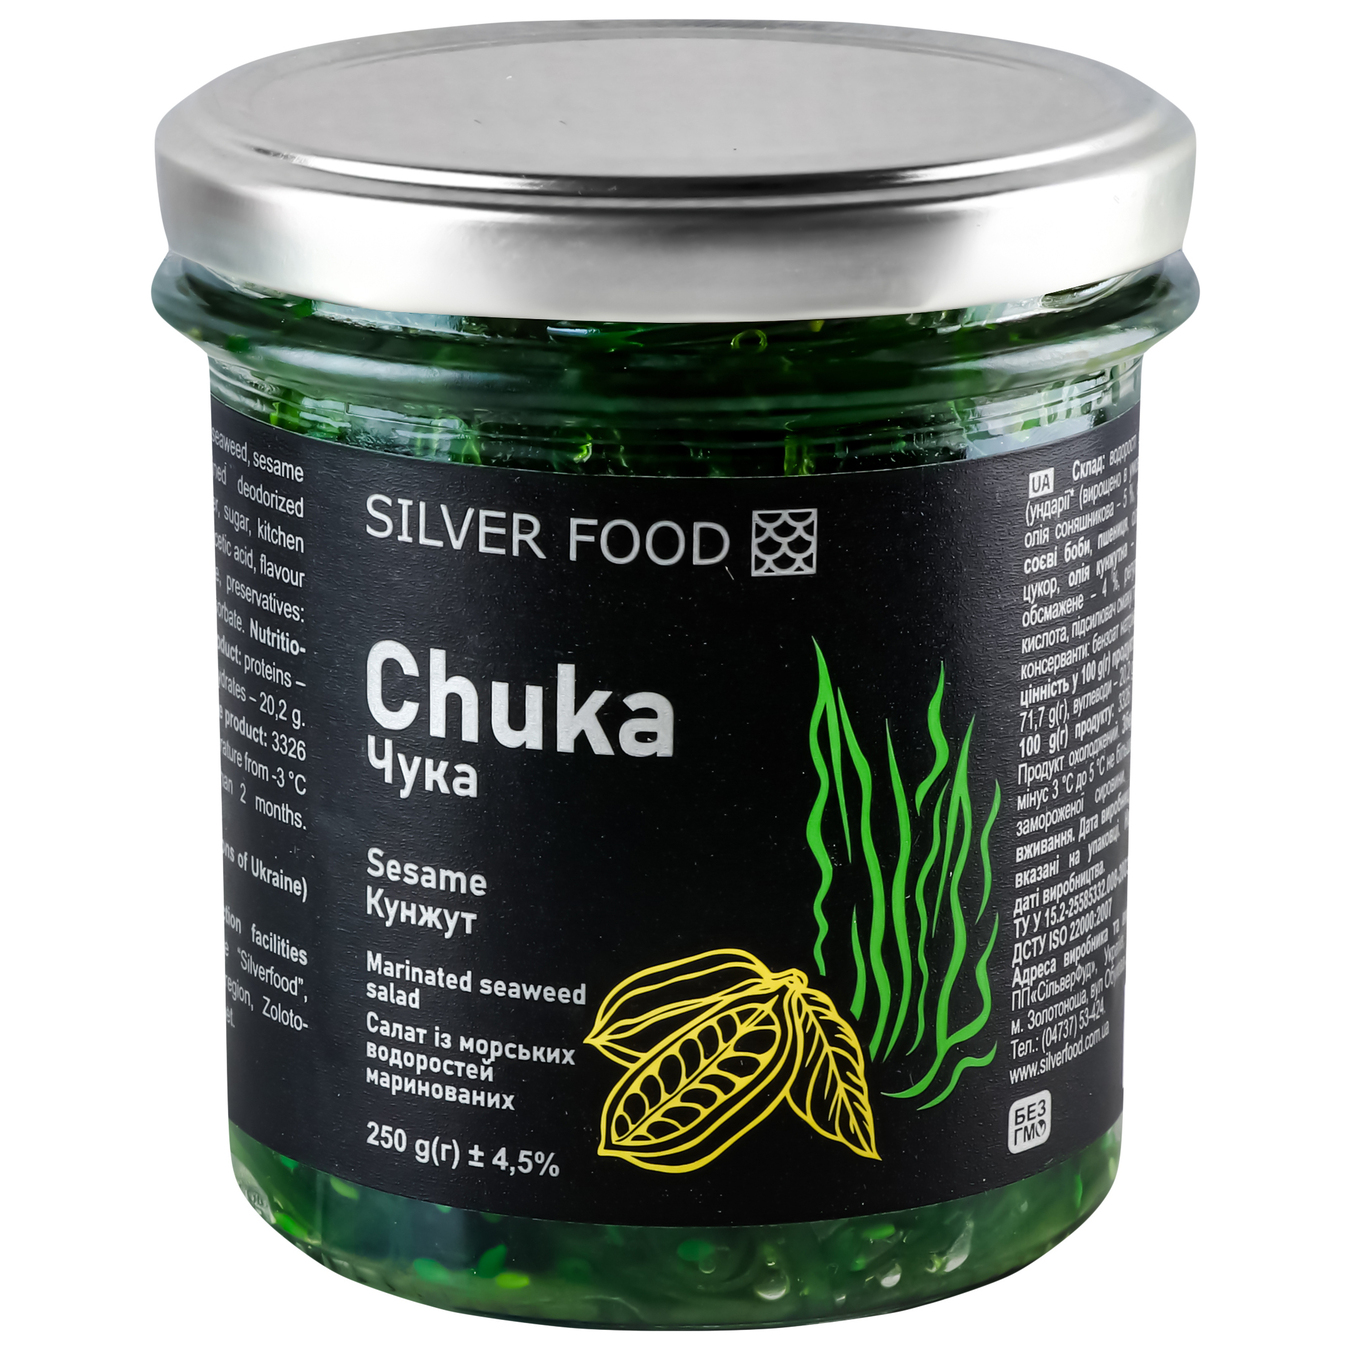 Chuka Silver Food with sesame 250g 2